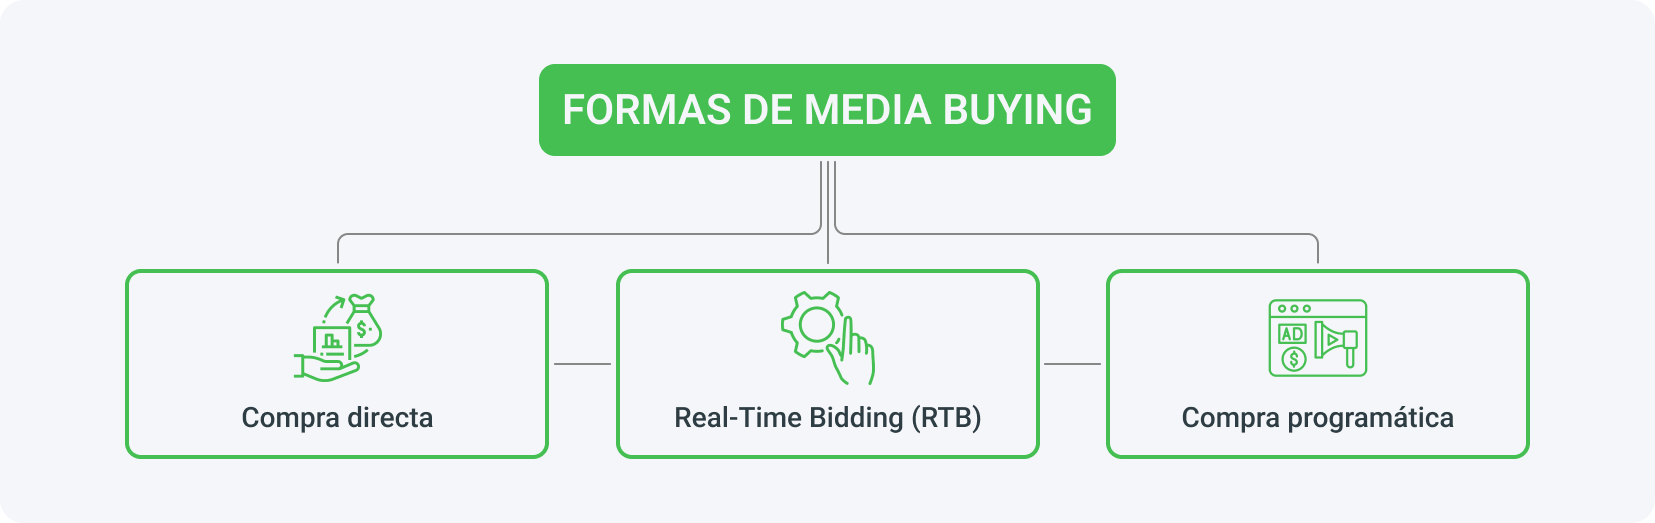 Al media buying se lo puede dividir en compra directa, real-time bidding y compra programática.